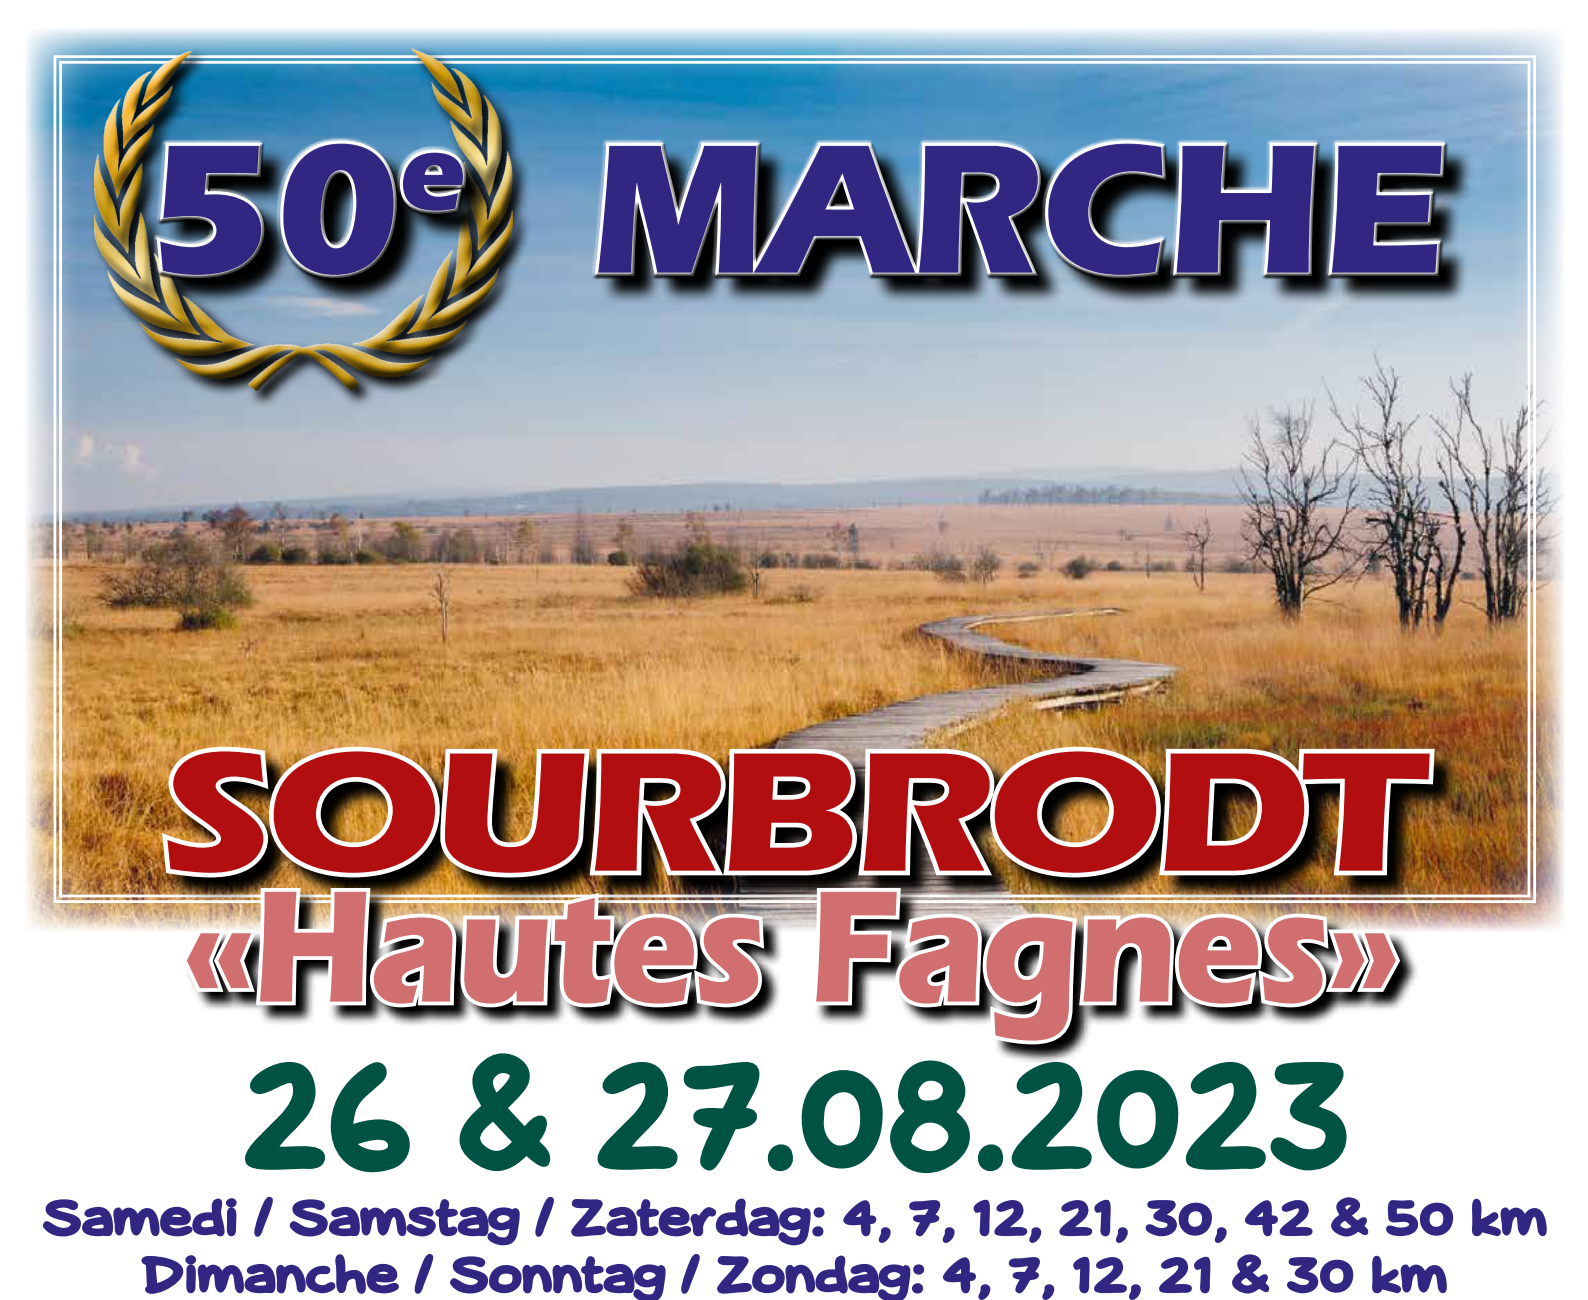 Club des Marcheurs des Hautes Fagnes Sourbrodt